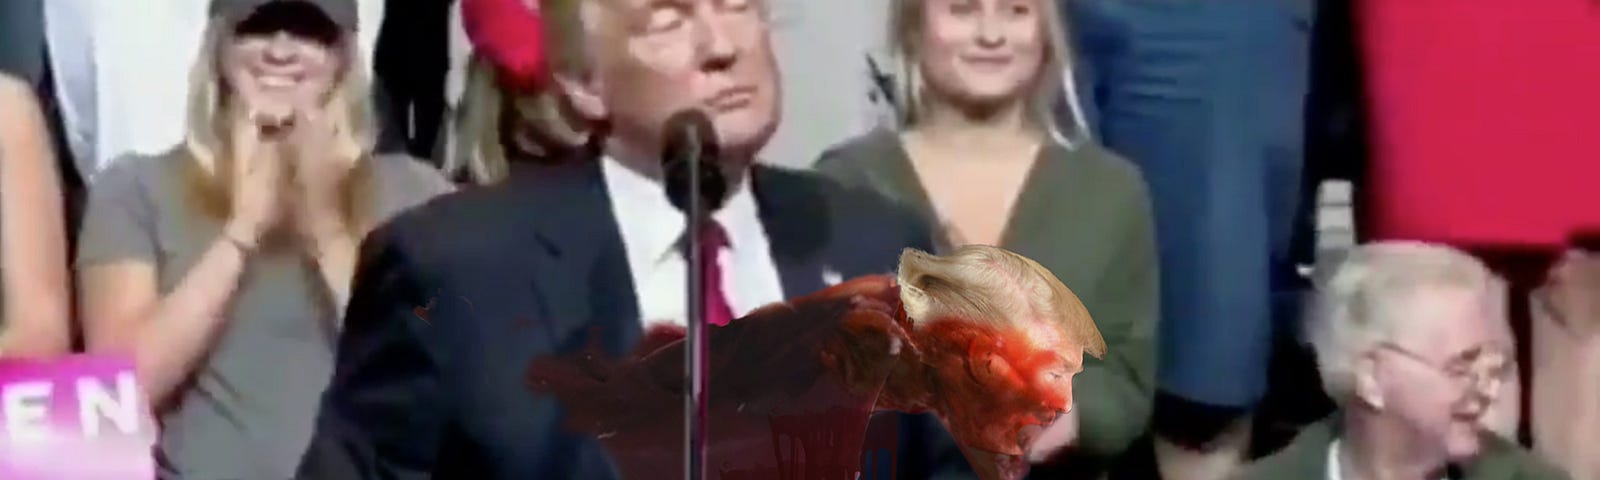 alien breaks free of Trump’s body